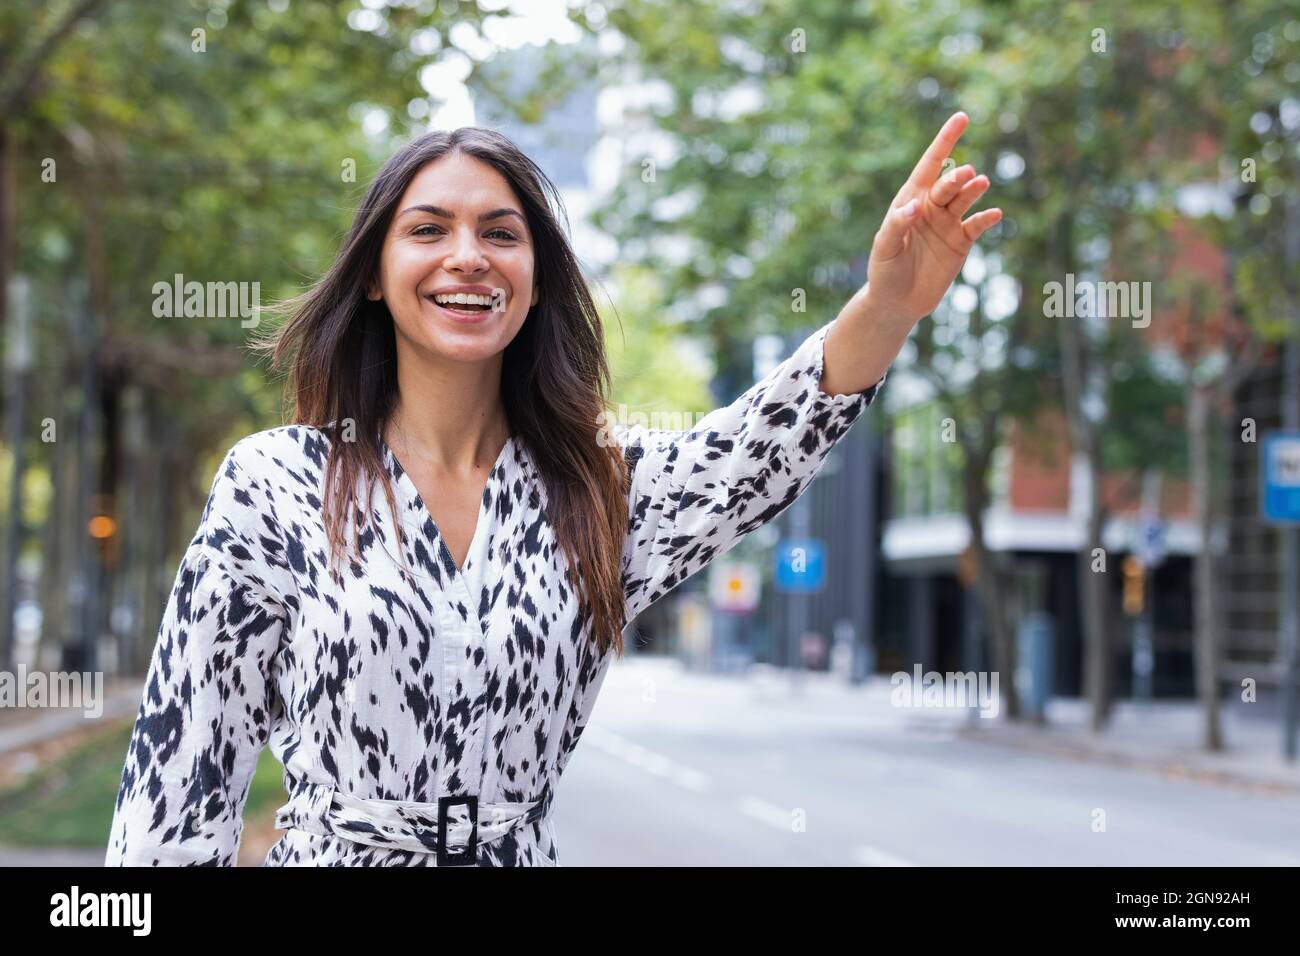 Lächelnd schöne junge weibliche Touristen hailing Fahrt auf der Straße Stockfoto